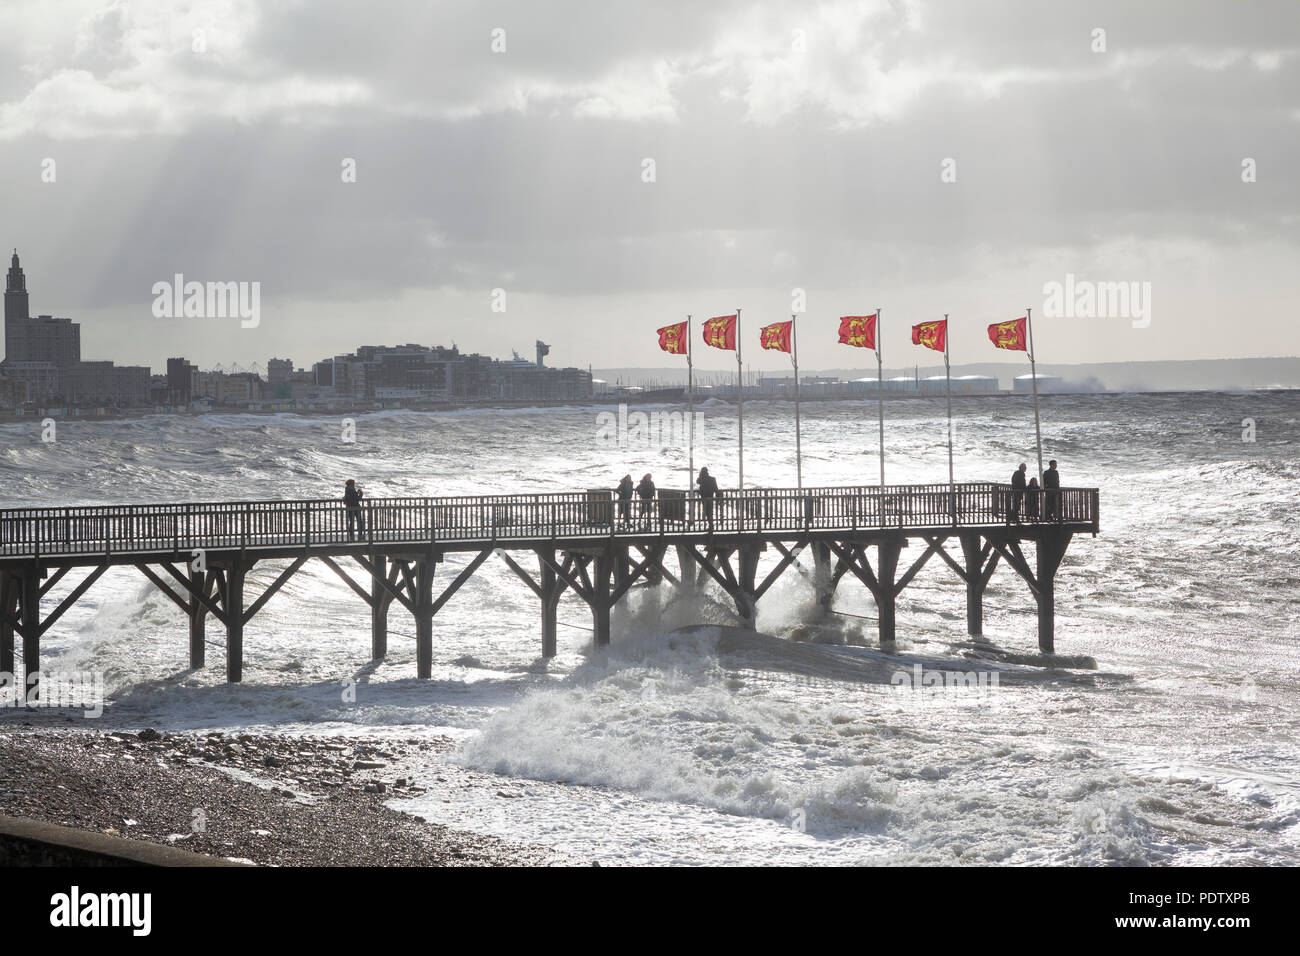 Olas y surf rompiendo en tierra en una tormenta invernal en Sainte Adresse, Le Havre, Normandía, Francia, con la silueta del muelle en primer plano Foto de stock